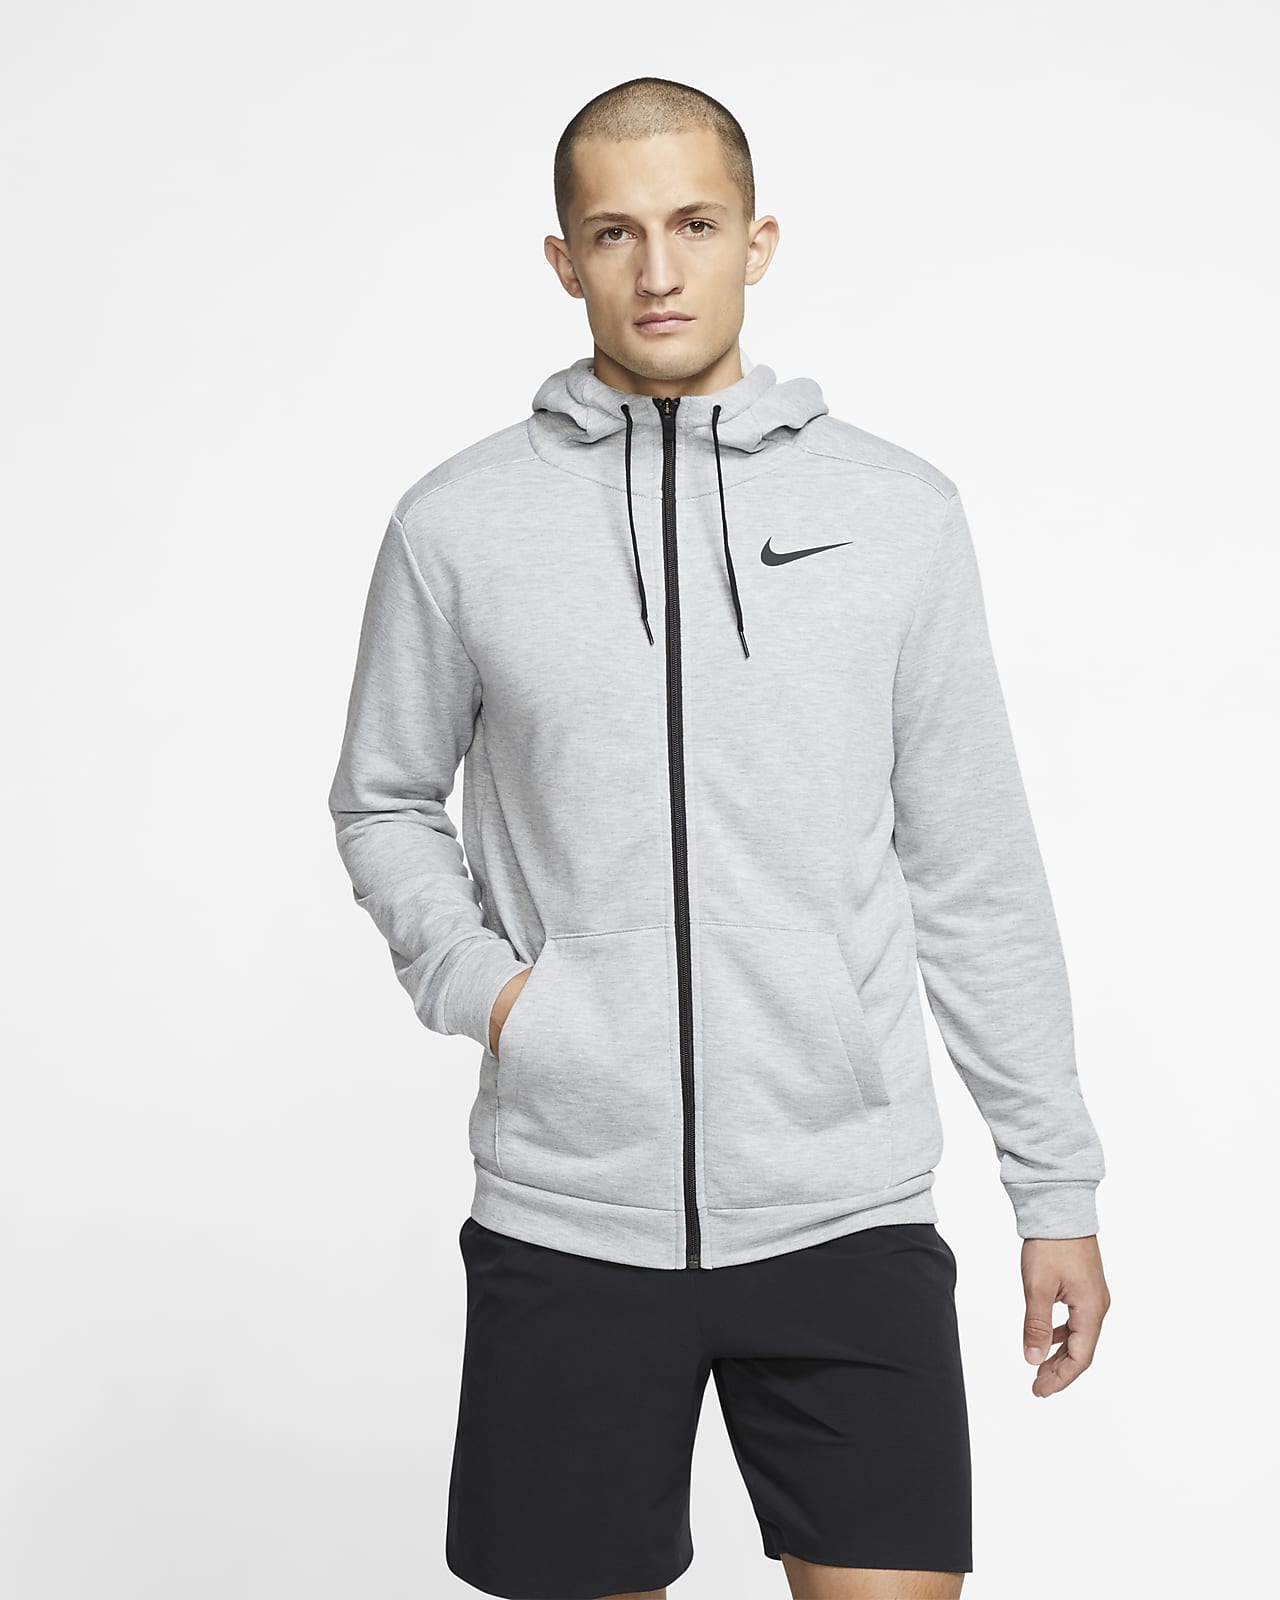 Sudadera con capucha de entrenamiento y cierre completo para hombre Nike Dri -FIT. Nike.com